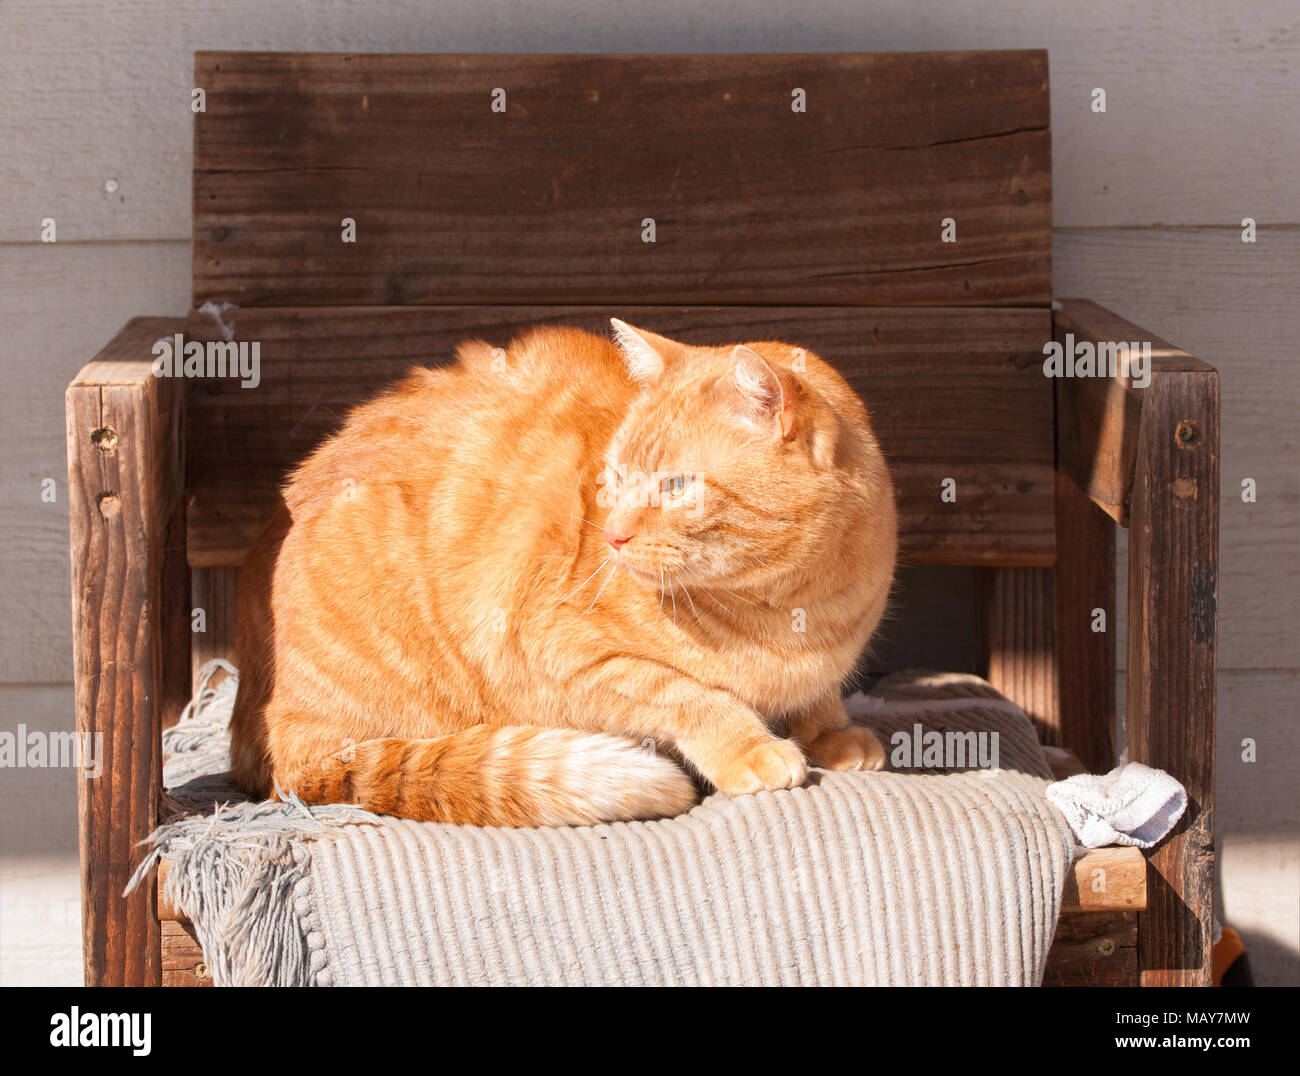 Ginger tabby cat assis sur une chaise en bois, dans un endroit ensoleillé à l'extérieur en hiver, absorbant la chaleur du soleil Banque D'Images